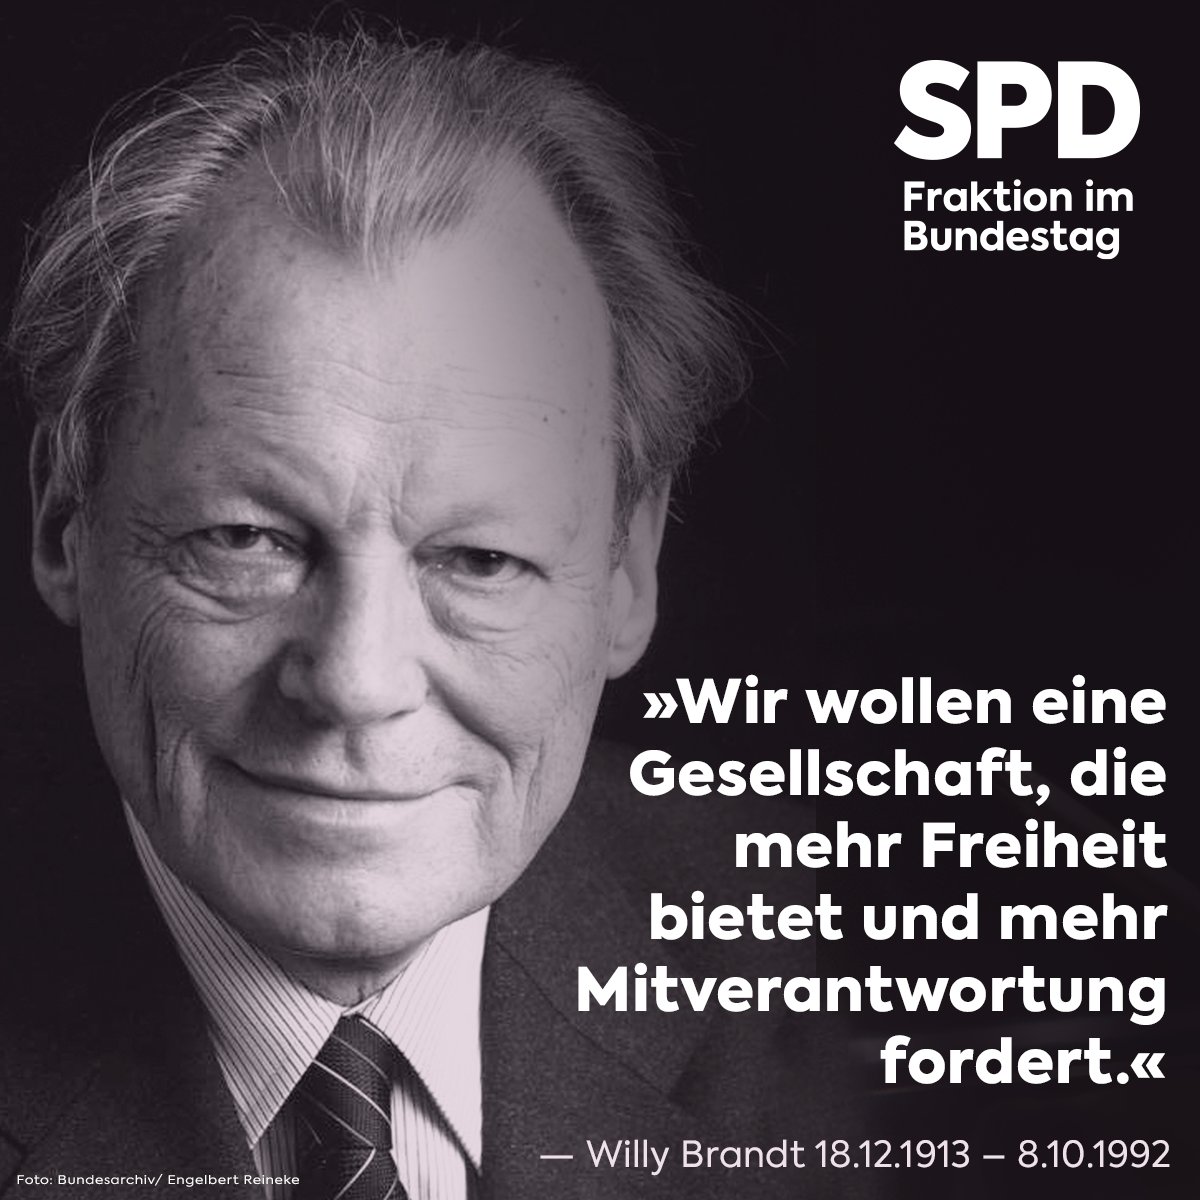 Vor 30 Jahren ist Willy Brandt gestorben. Er war Regierender Bürgermeister von Berlin, der erste sozialdemokratische Kanzler der Bundesrepublik und ein großer Parlamentarier. Wir verneigen uns vor einem der größten Staatsmänner, die Deutschland je hervorgebracht hat. #WillyBrandt